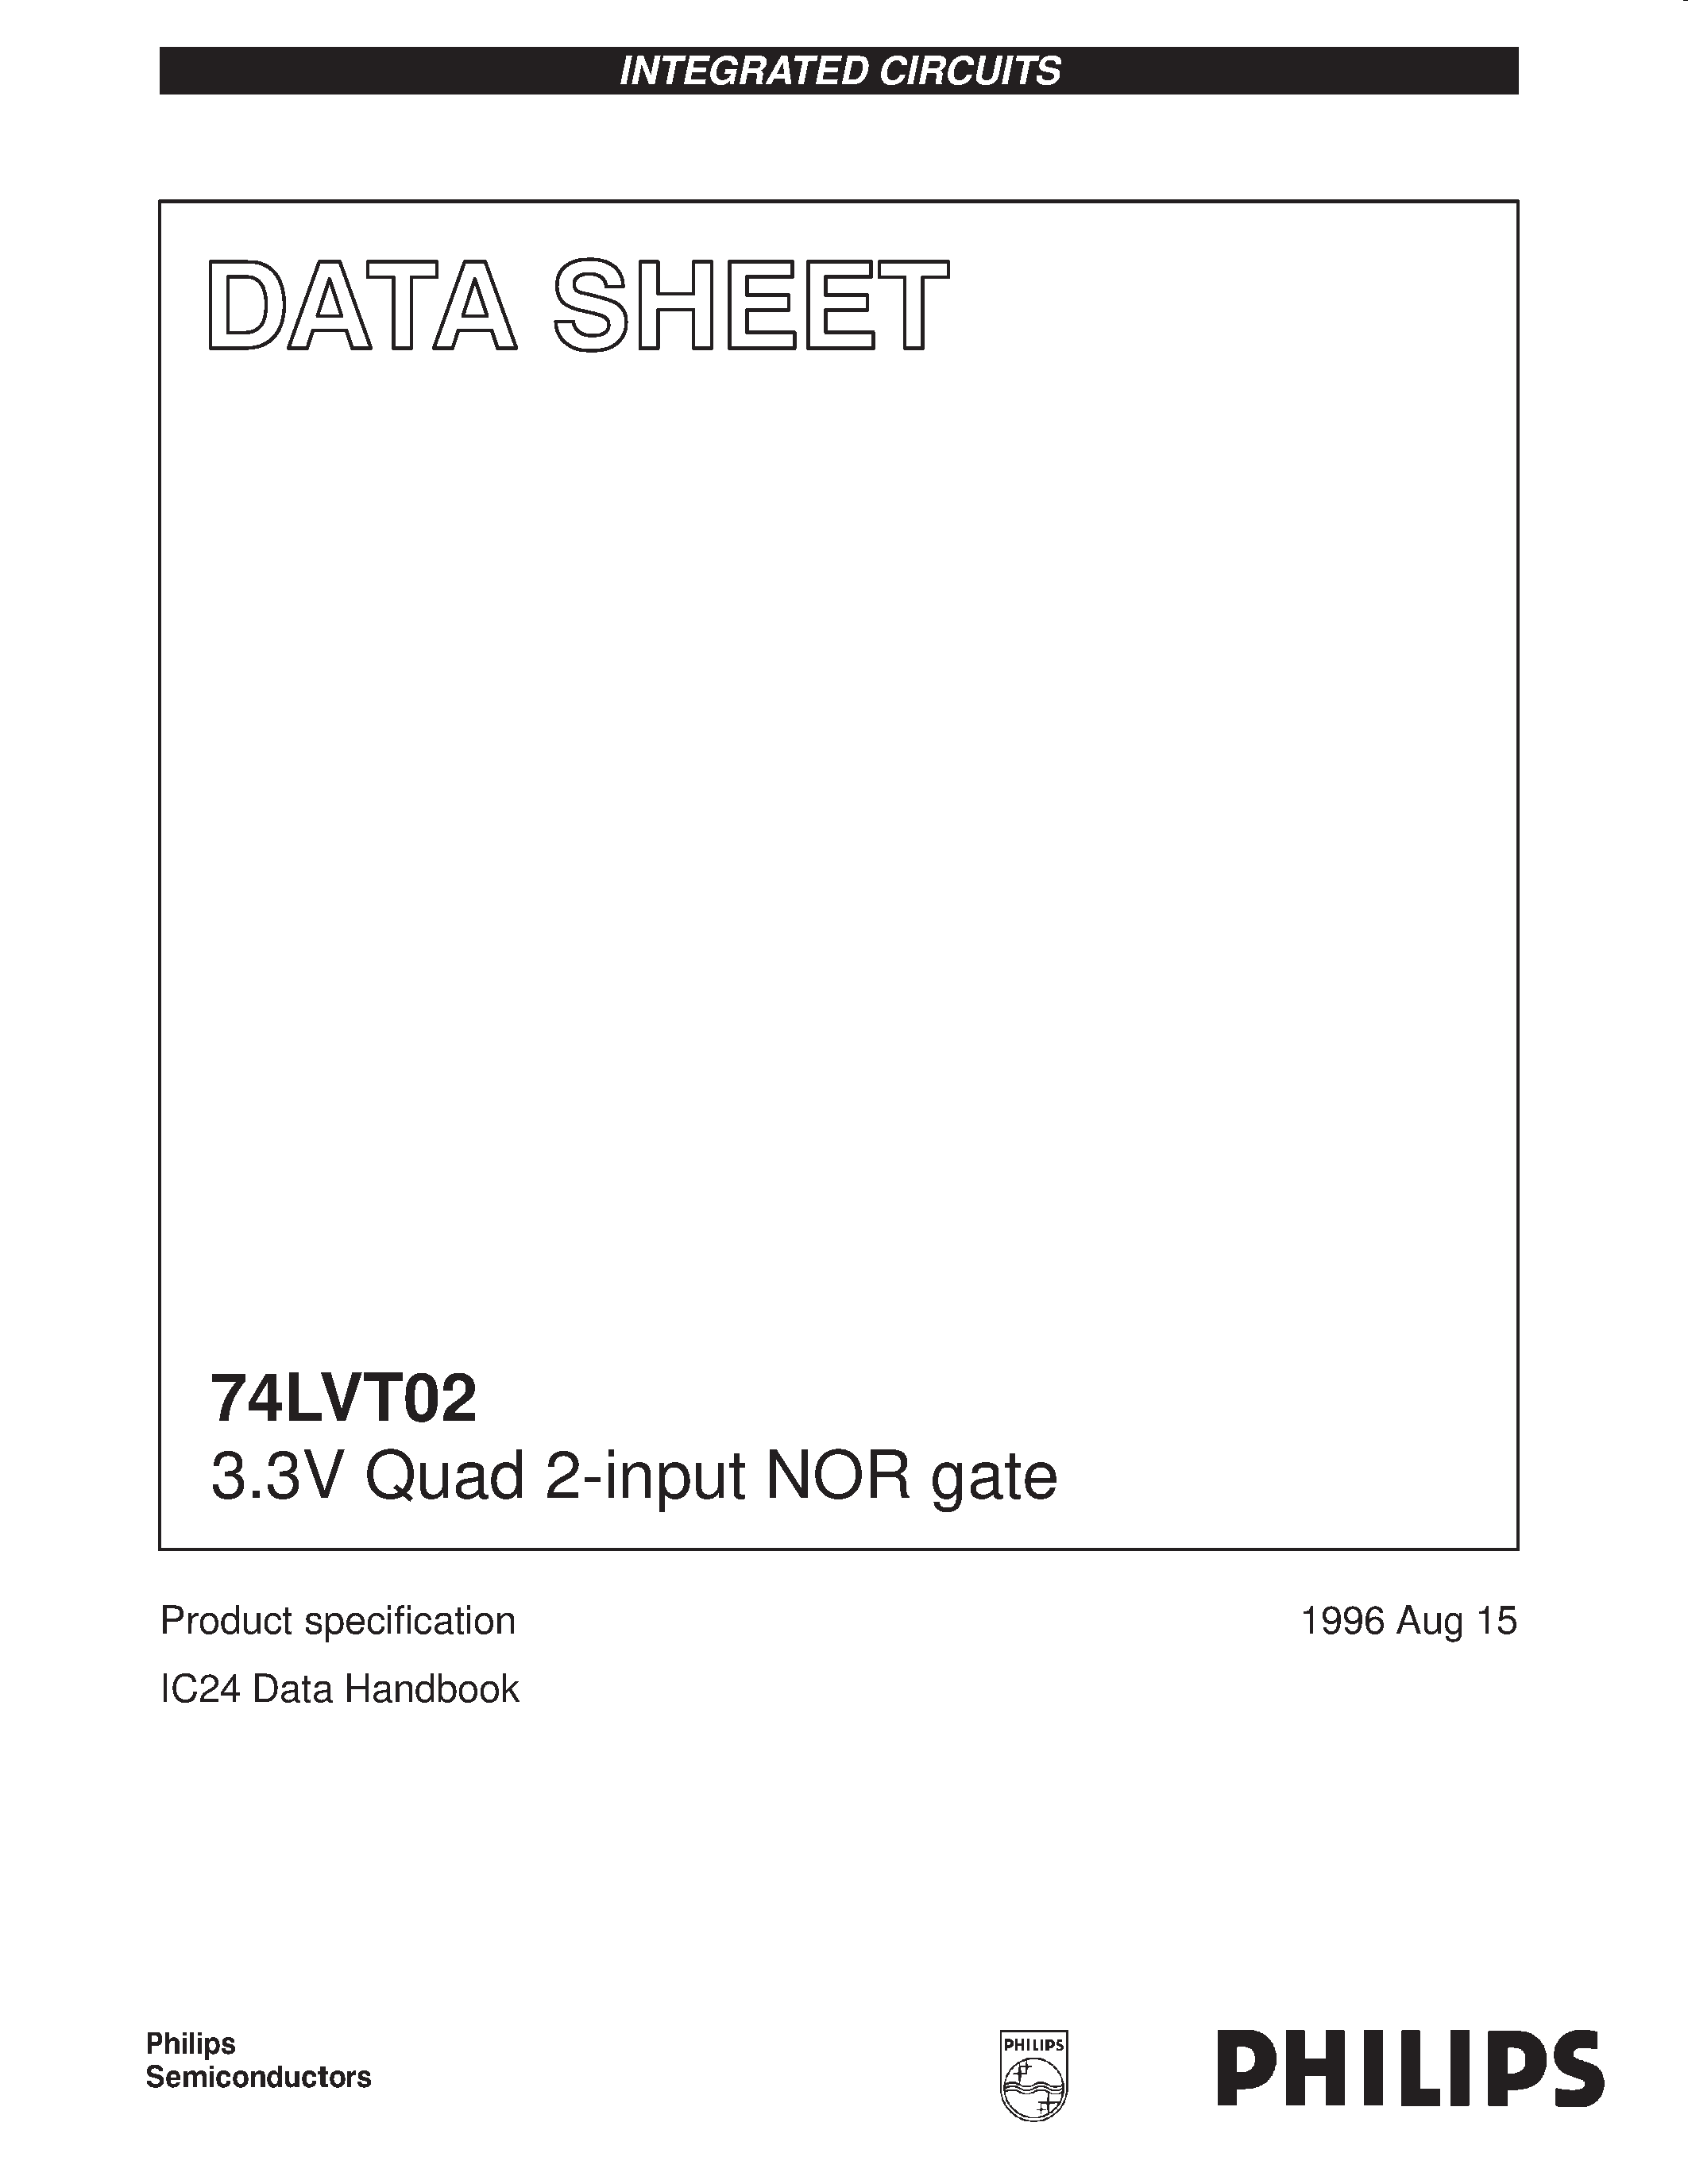 Даташит 74LVT02 - 3.3V Quad 2-input NOR gate страница 1